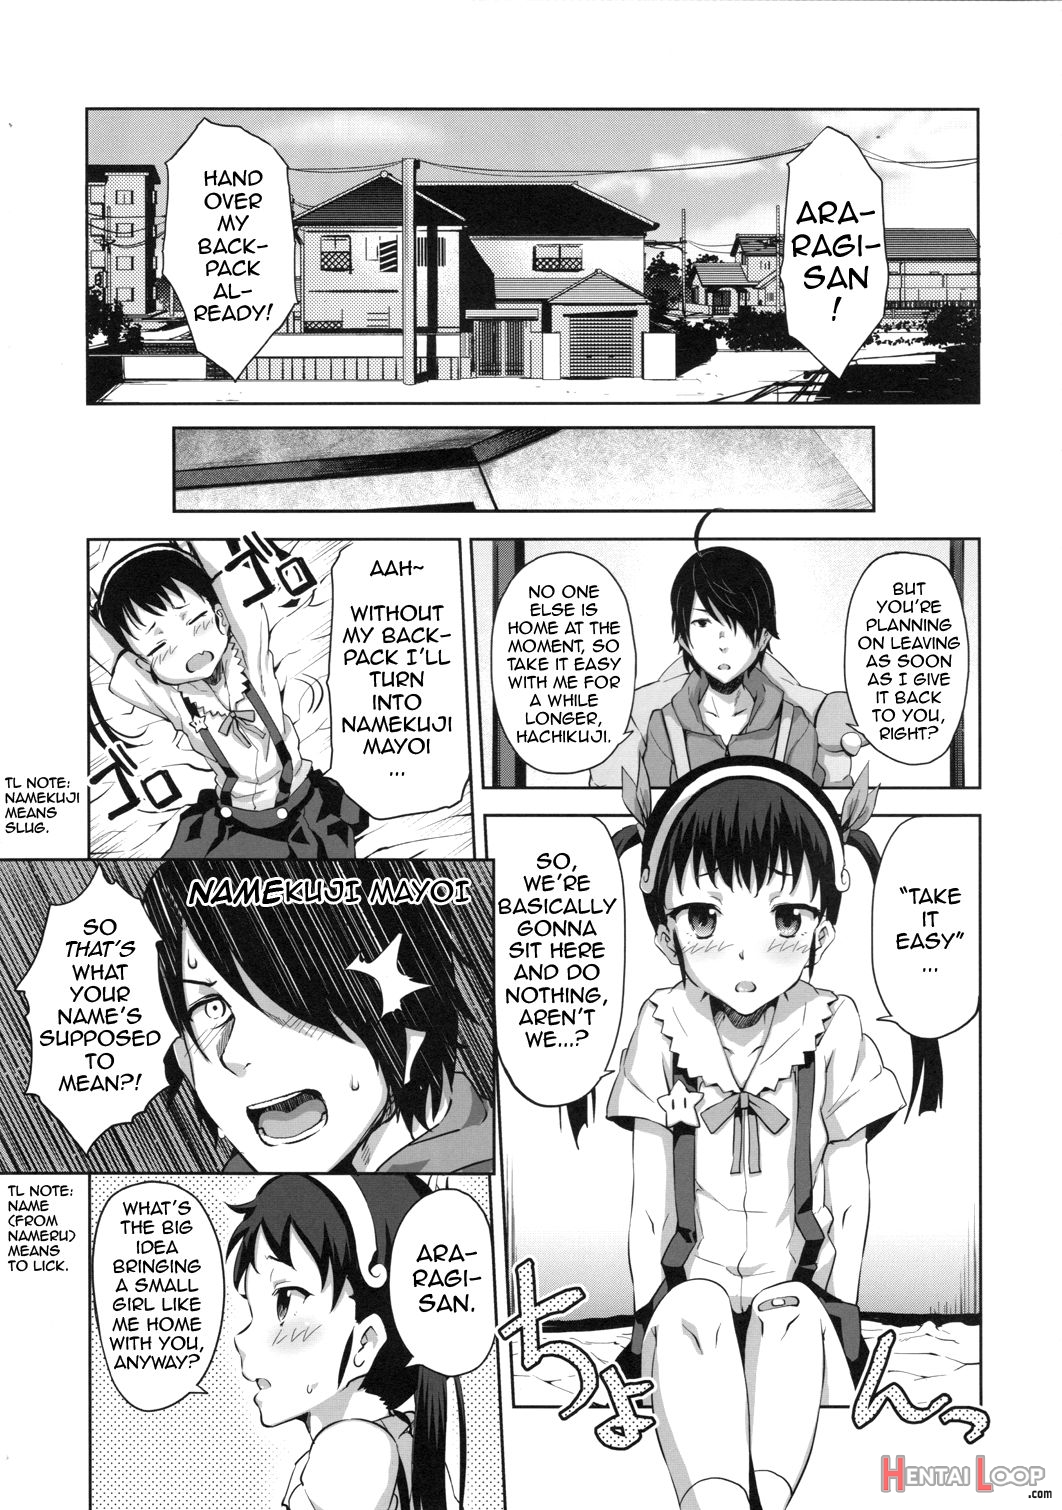 Namekuji Mayoigatari page 4